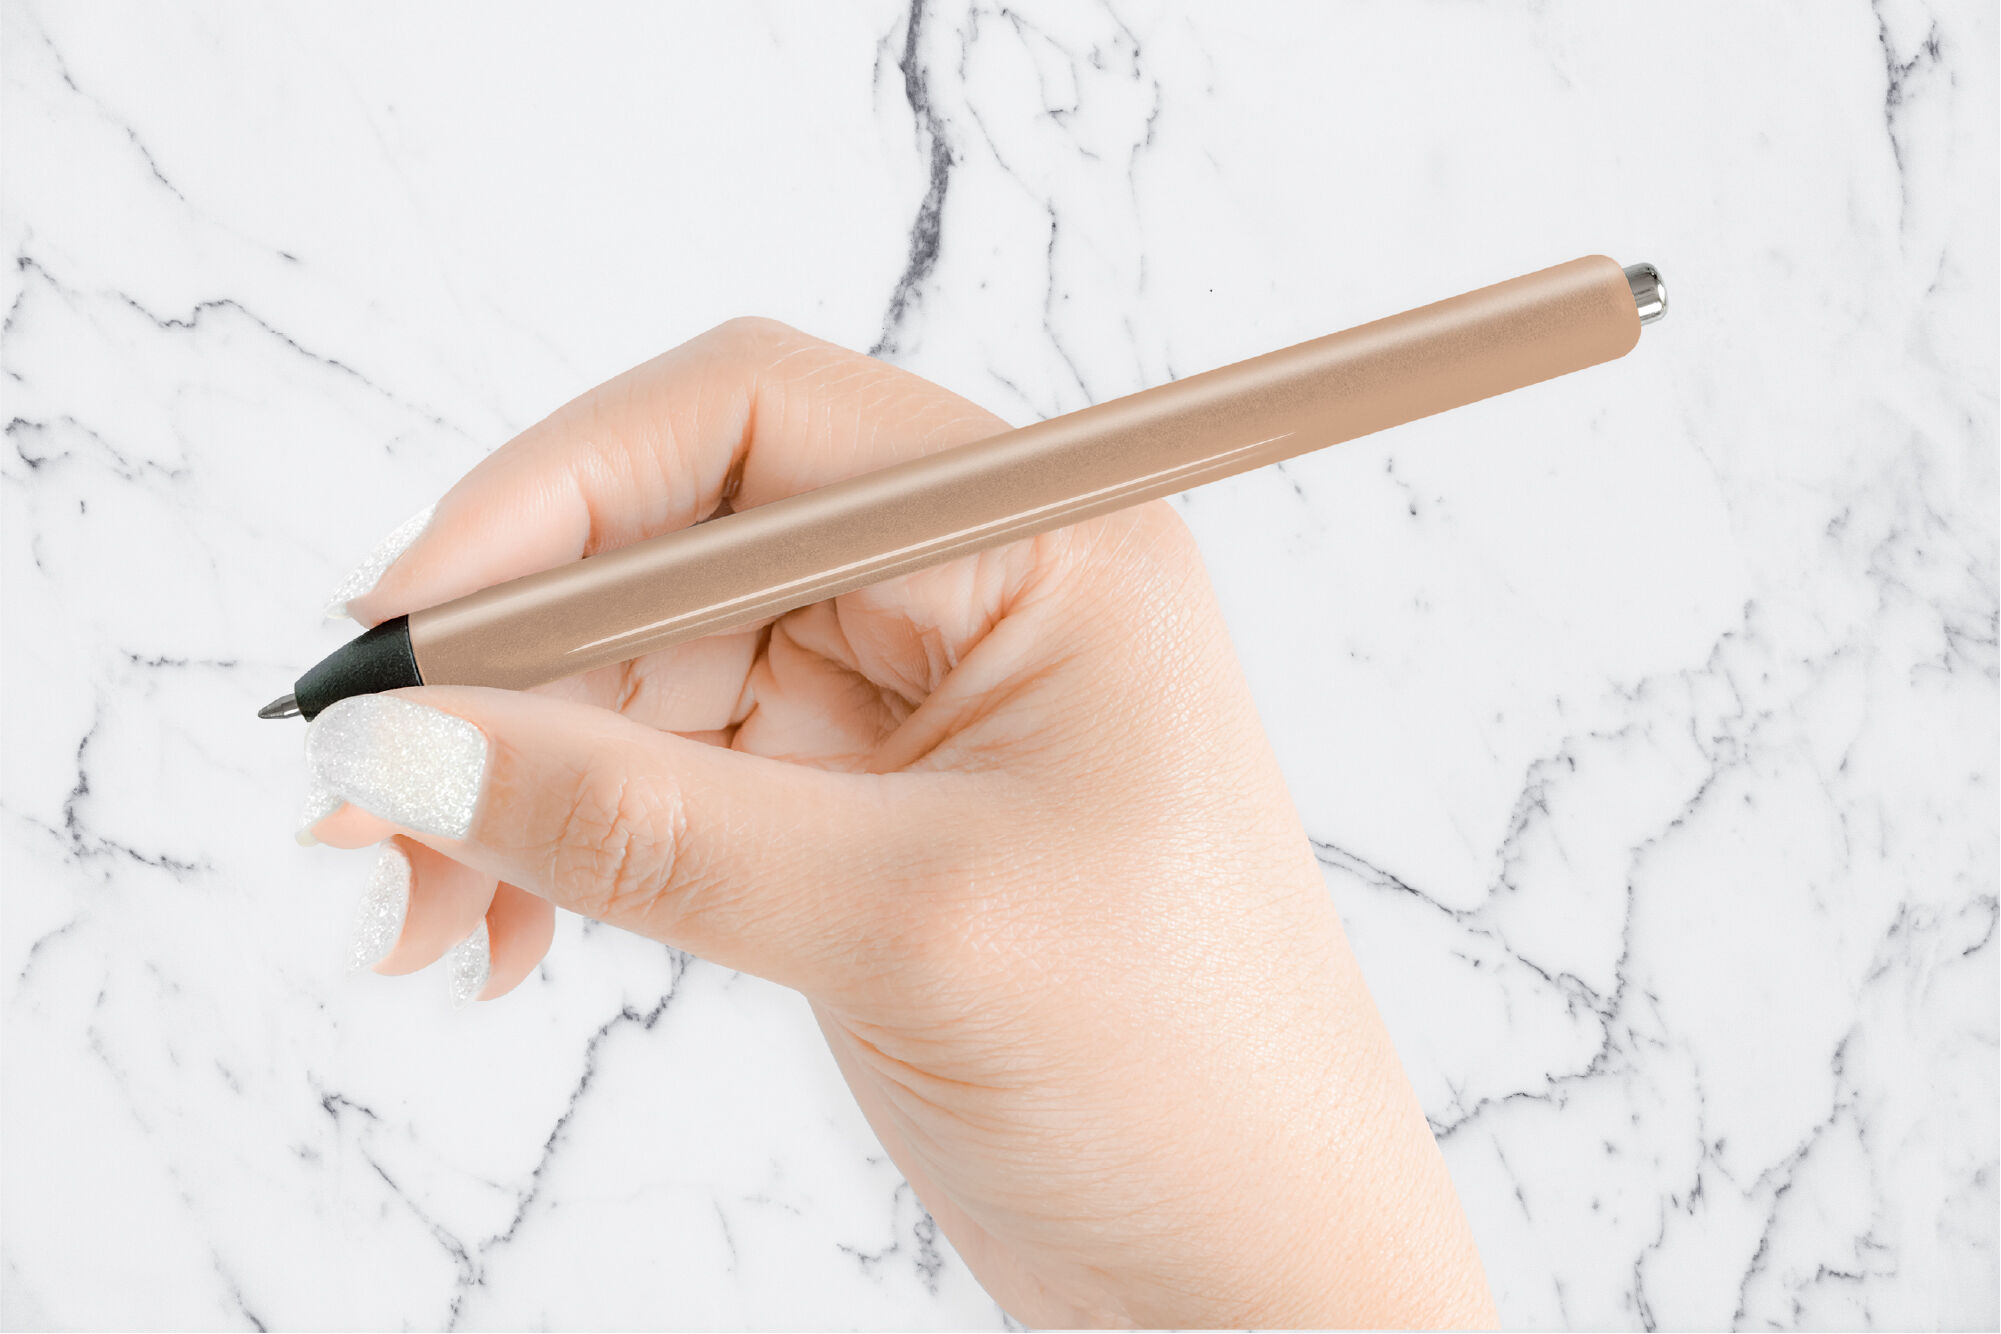 Pen Wraps Louis Vuitton SVG, DXF, PNG, EPS